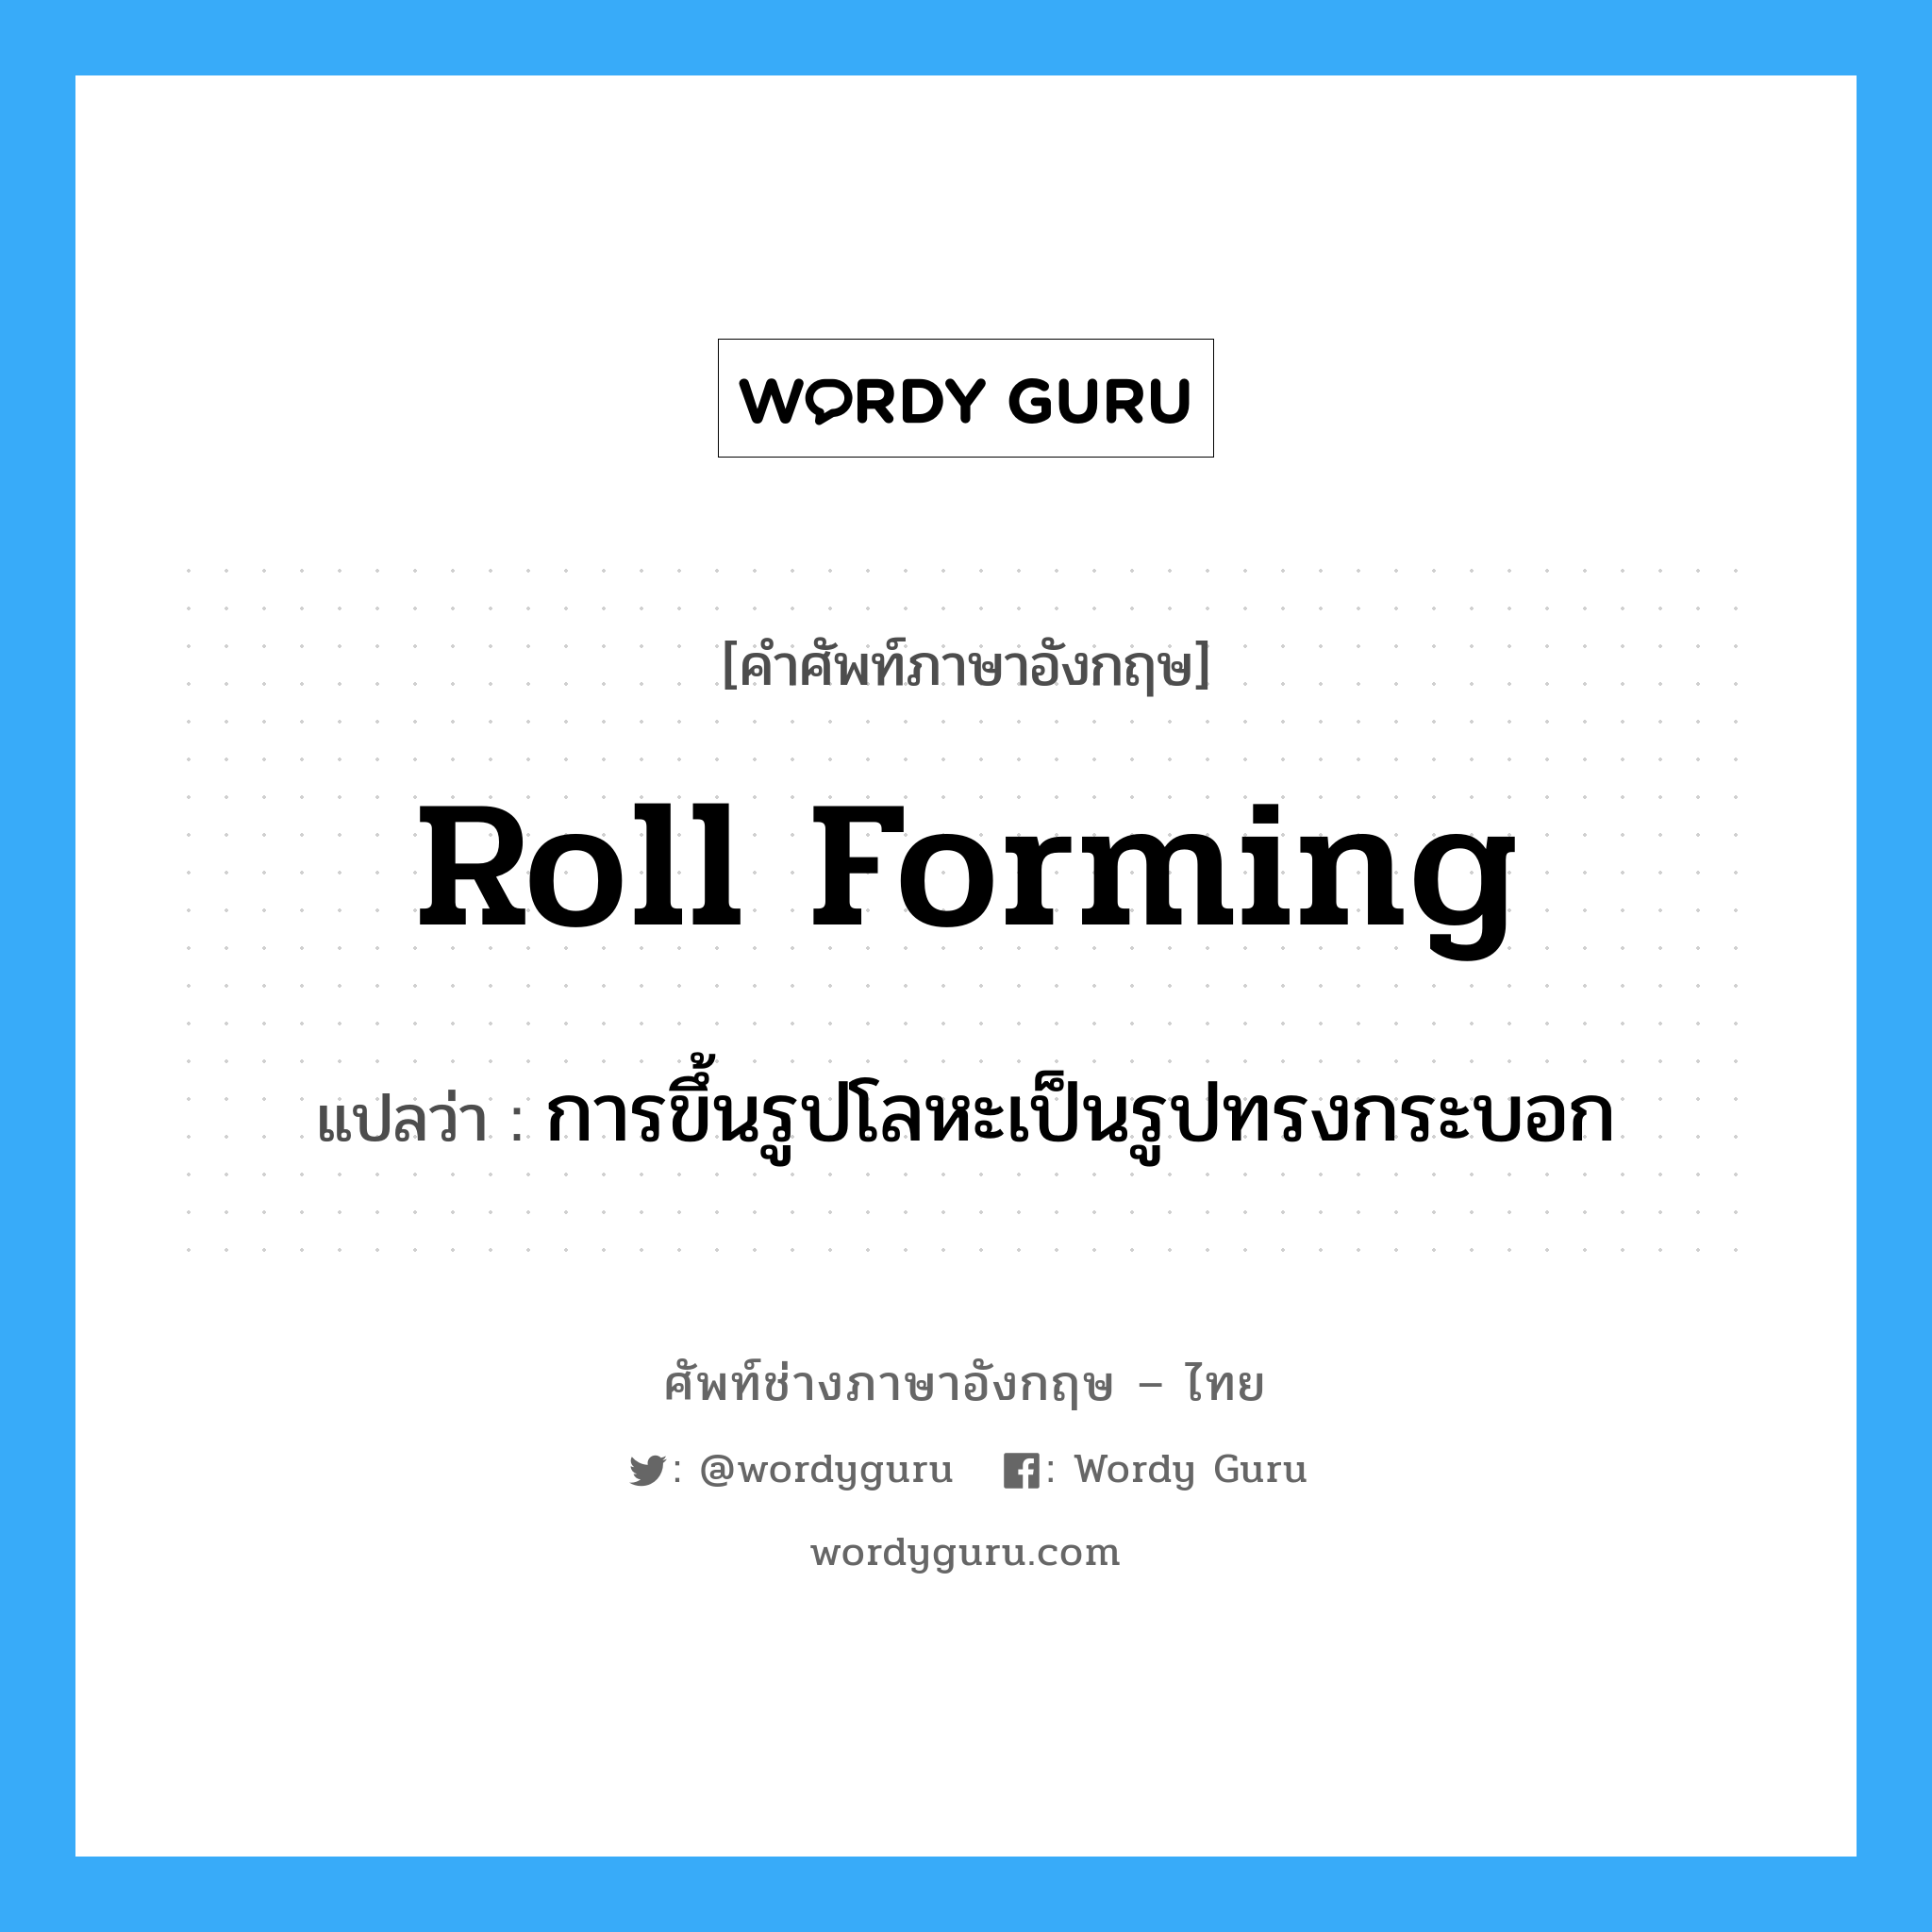 การขึ้นรูปโลหะเป็นรูปทรงกระบอก ภาษาอังกฤษ?, คำศัพท์ช่างภาษาอังกฤษ - ไทย การขึ้นรูปโลหะเป็นรูปทรงกระบอก คำศัพท์ภาษาอังกฤษ การขึ้นรูปโลหะเป็นรูปทรงกระบอก แปลว่า roll forming